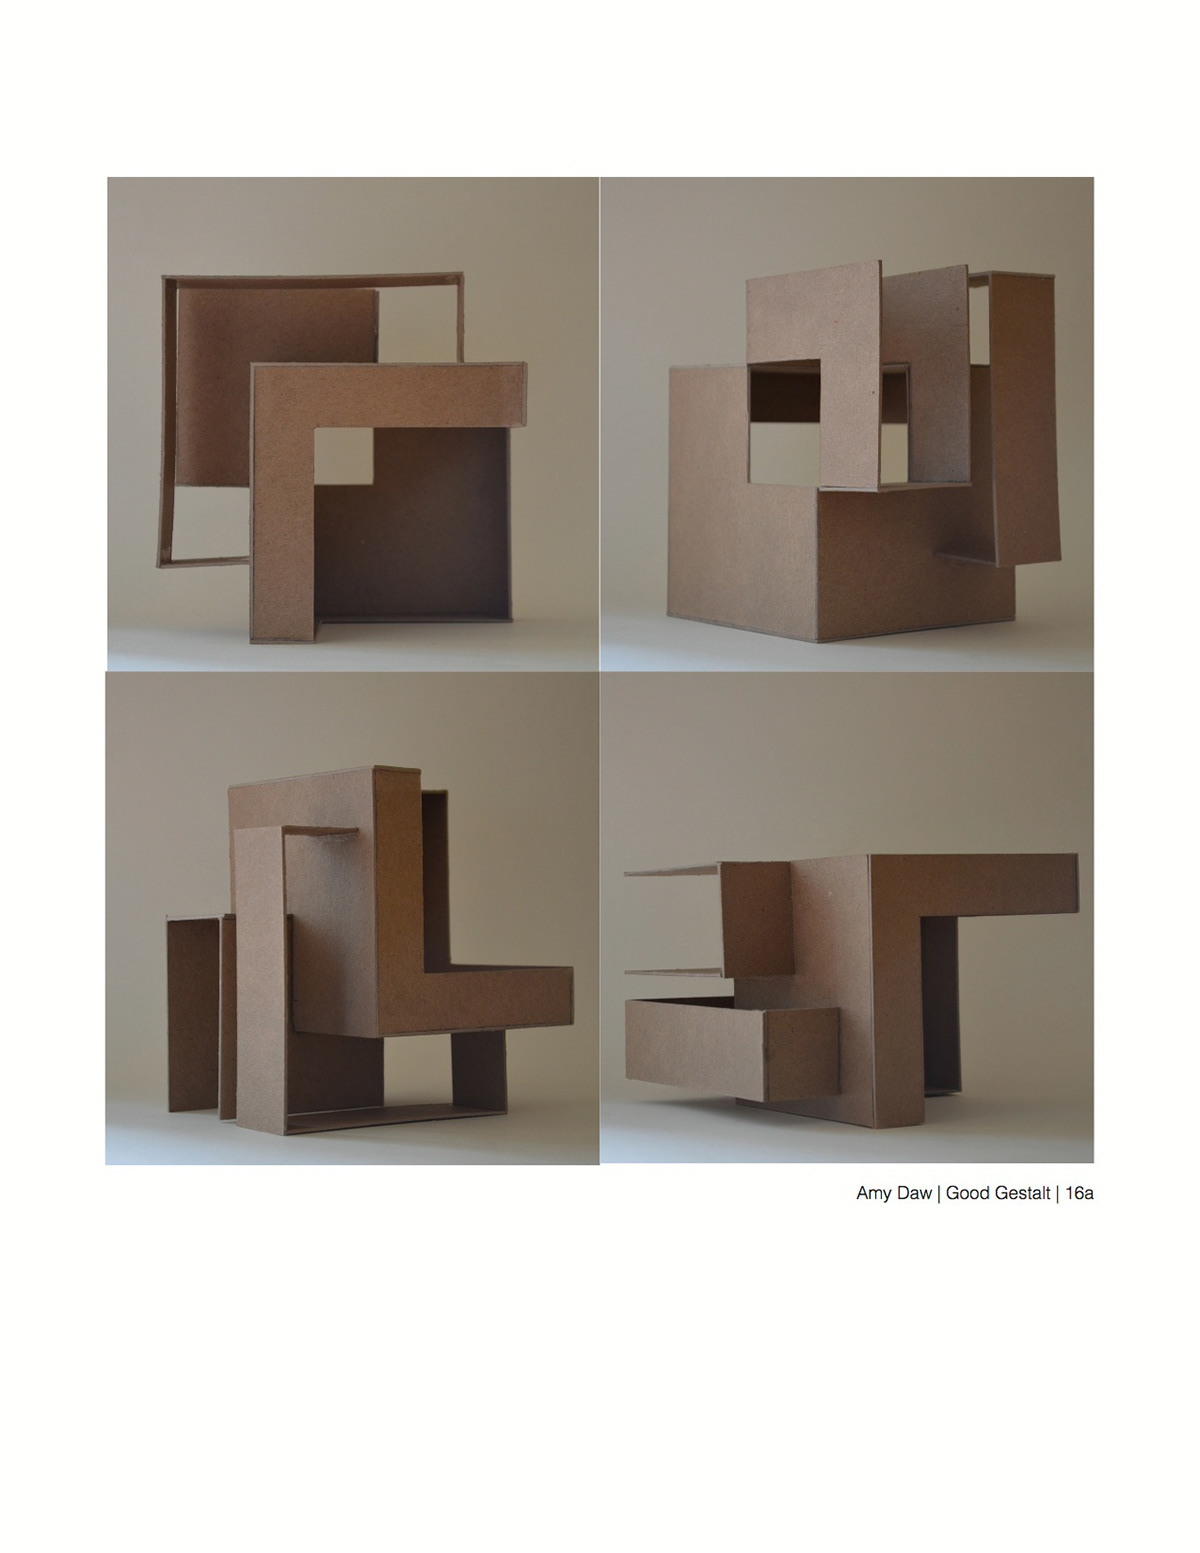 sculpture design building model Interior